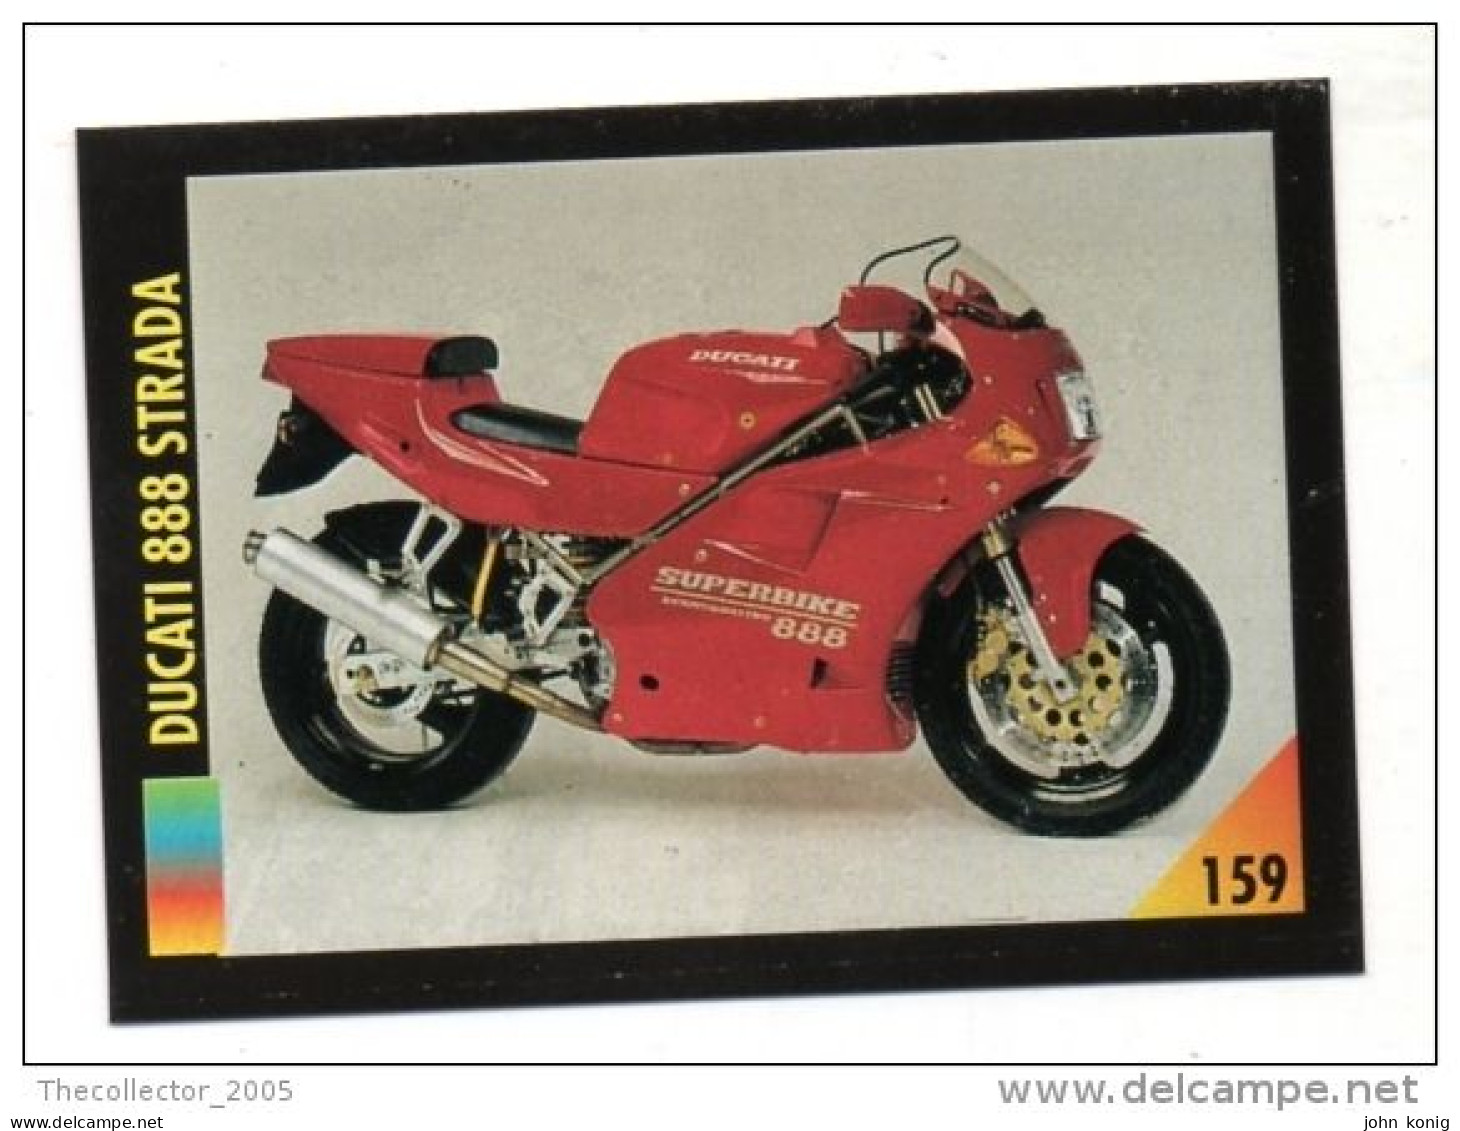 FIGURINA TRADING CARDS - LA MIA MOTO - MY MOTORBIKE - MASTERS EDIZIONI (1993) - DUCATI 888 STRADA - Auto & Verkehr